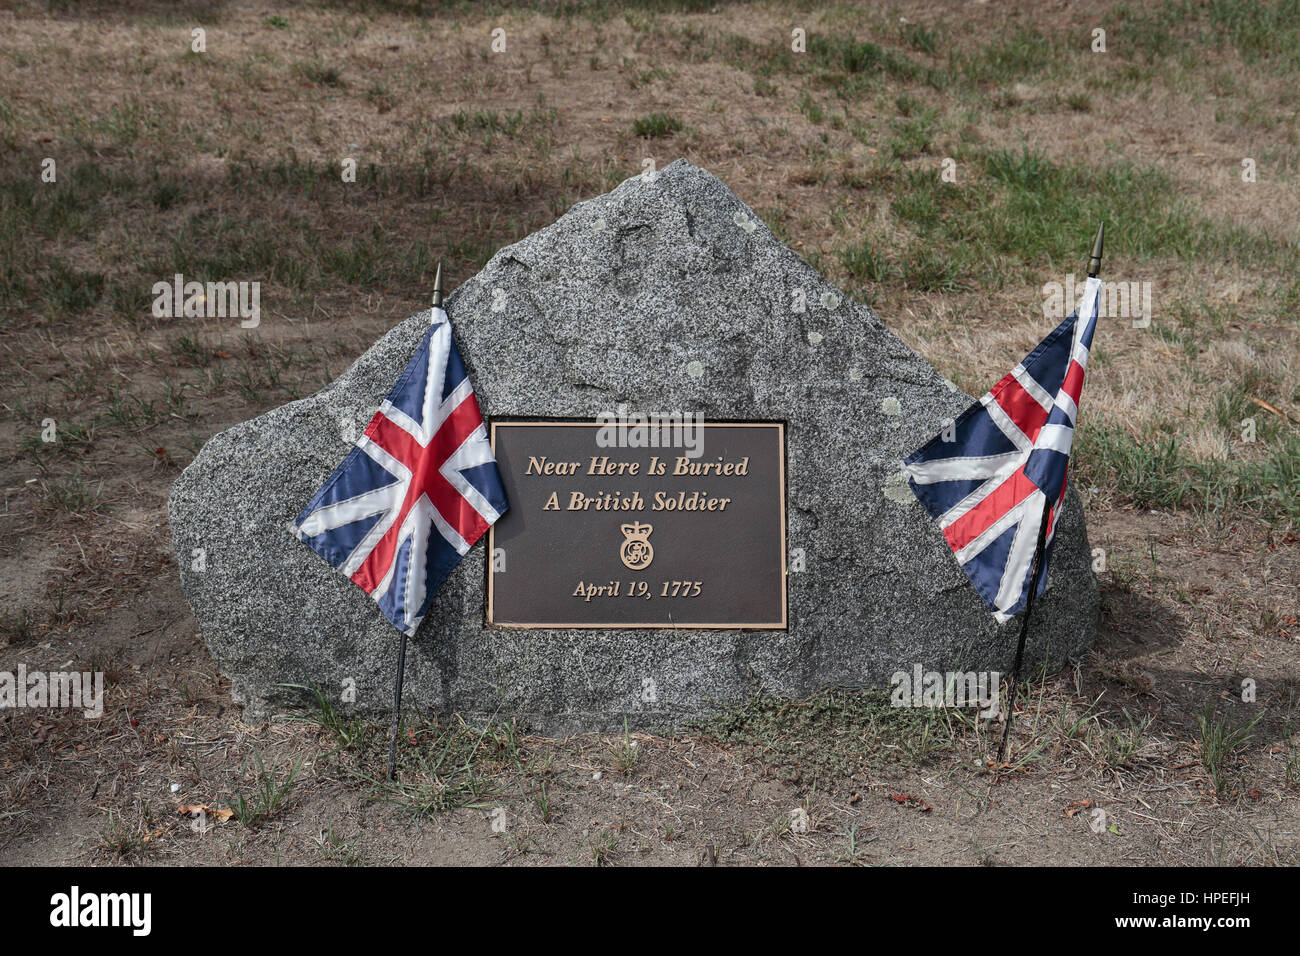 Une pierre tombale pour les soldats britanniques dans la région de Minute Man National Historical Park, comté de Middlesex, Massachusetts, United States. Banque D'Images